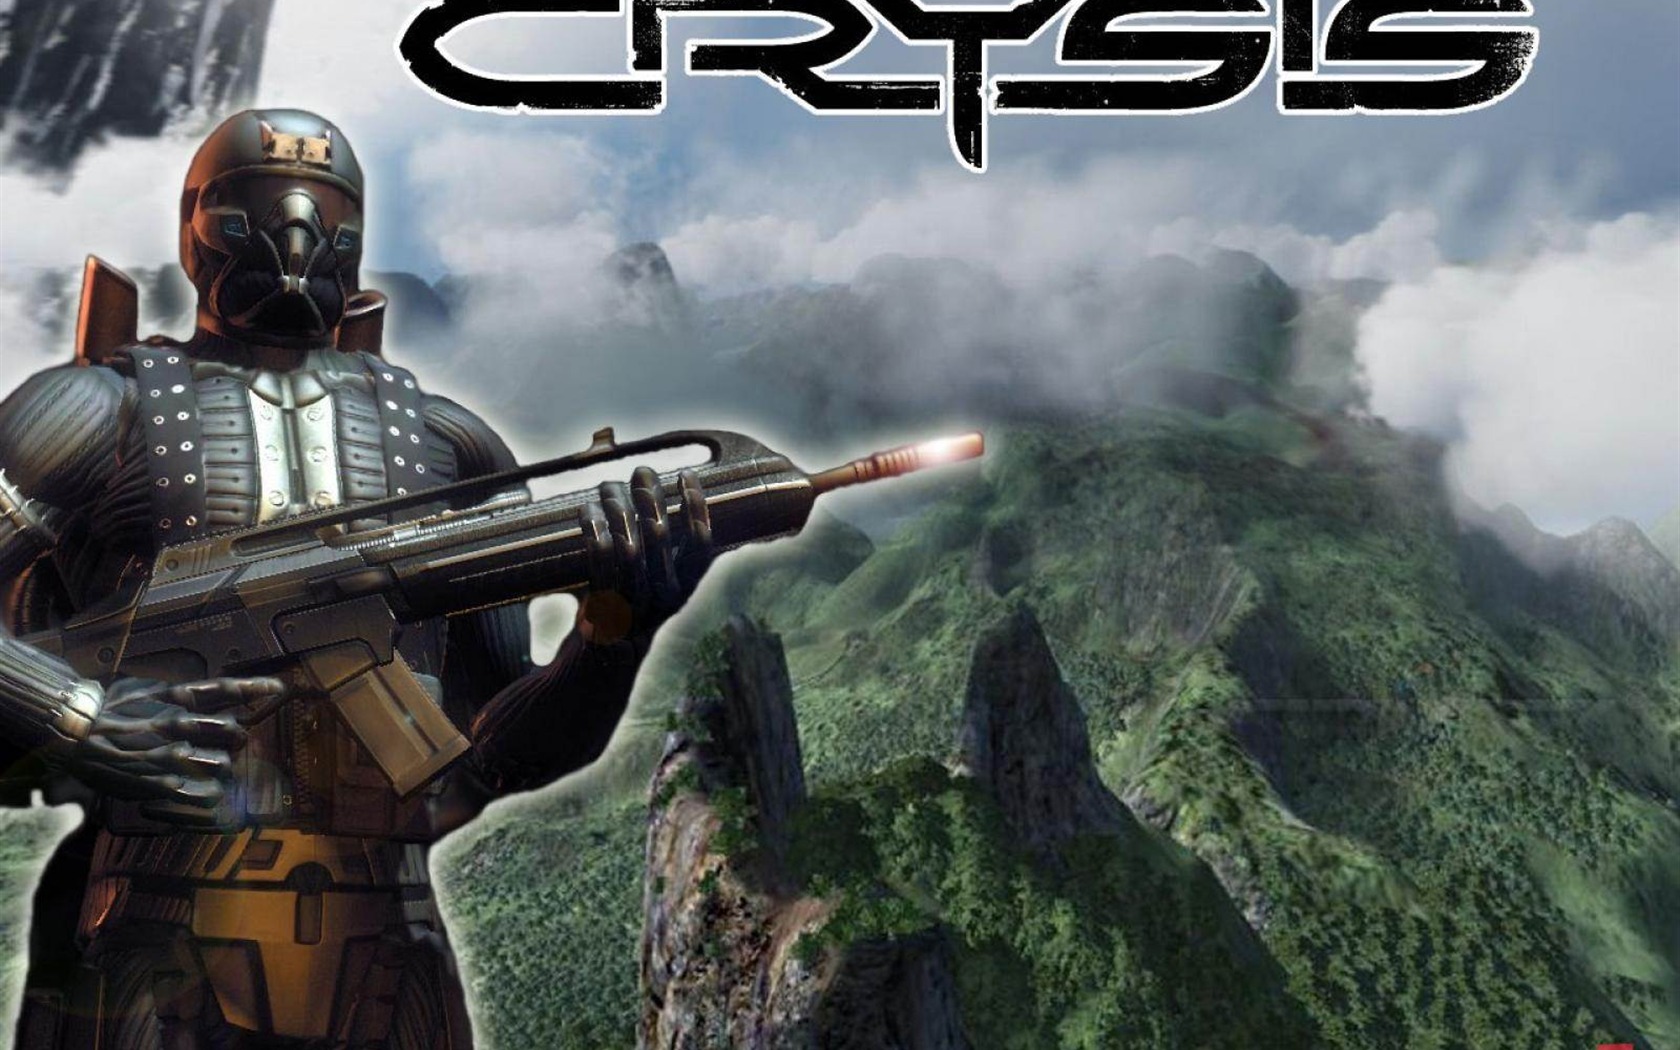  Crysisの壁紙(2) #16 - 1680x1050